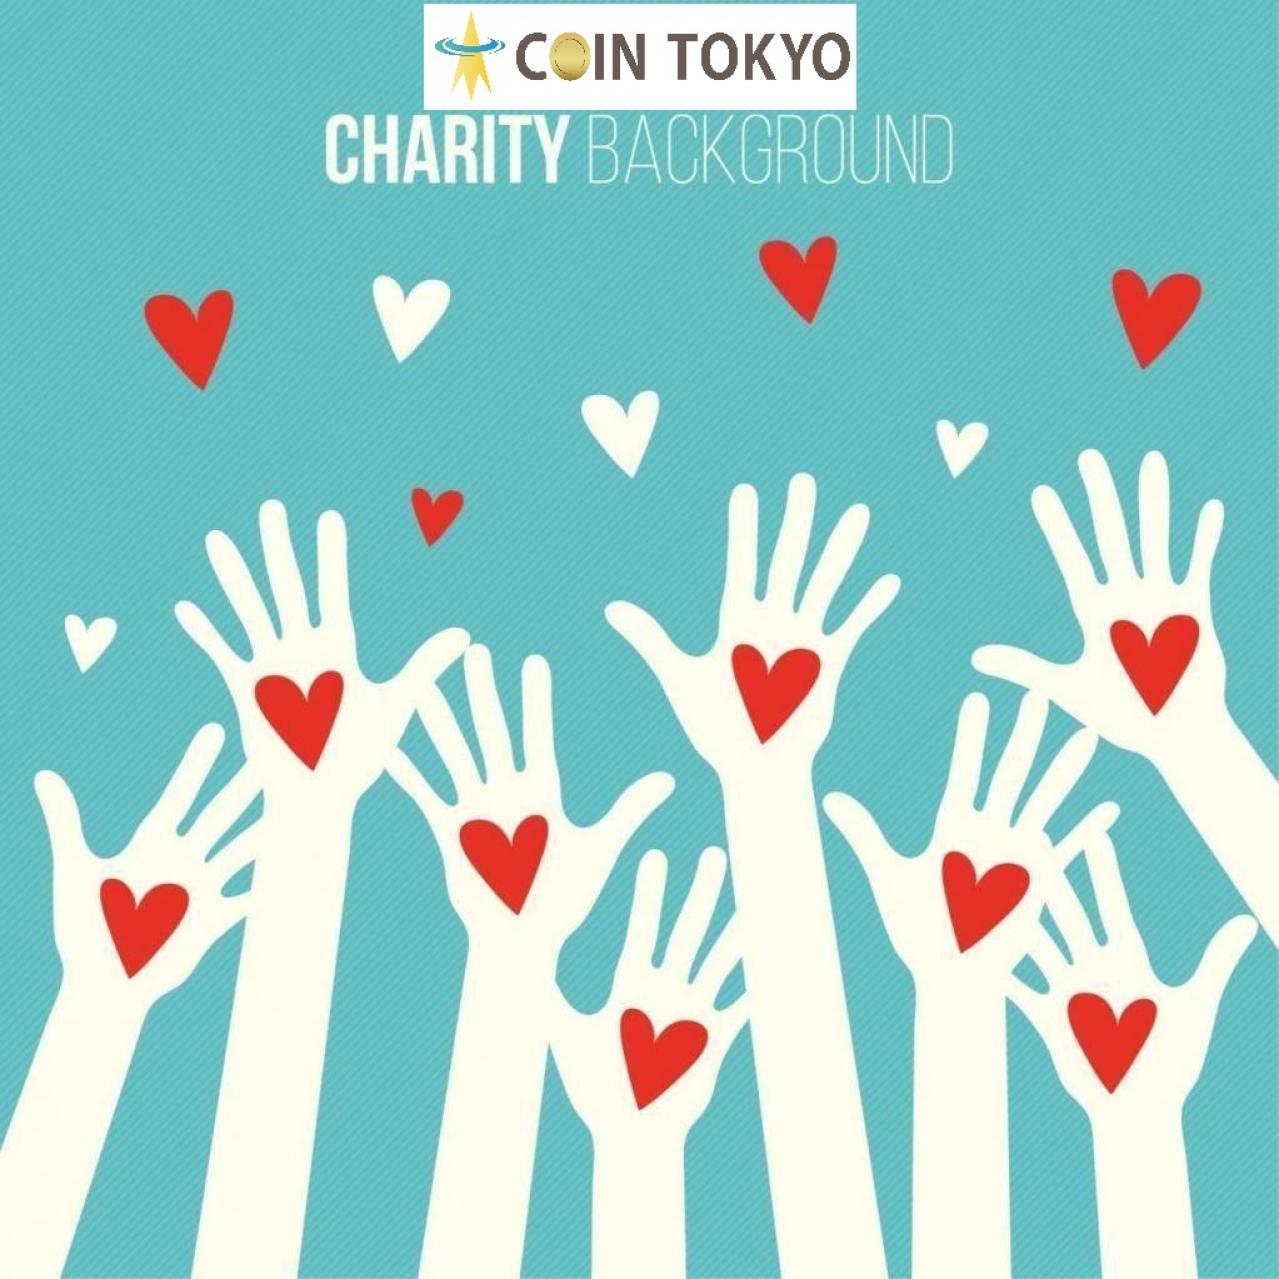 联合国儿童基金会建立虚拟货币基金，按原样运营比特币和以太坊+虚拟货币新闻网站Coin Tokyo